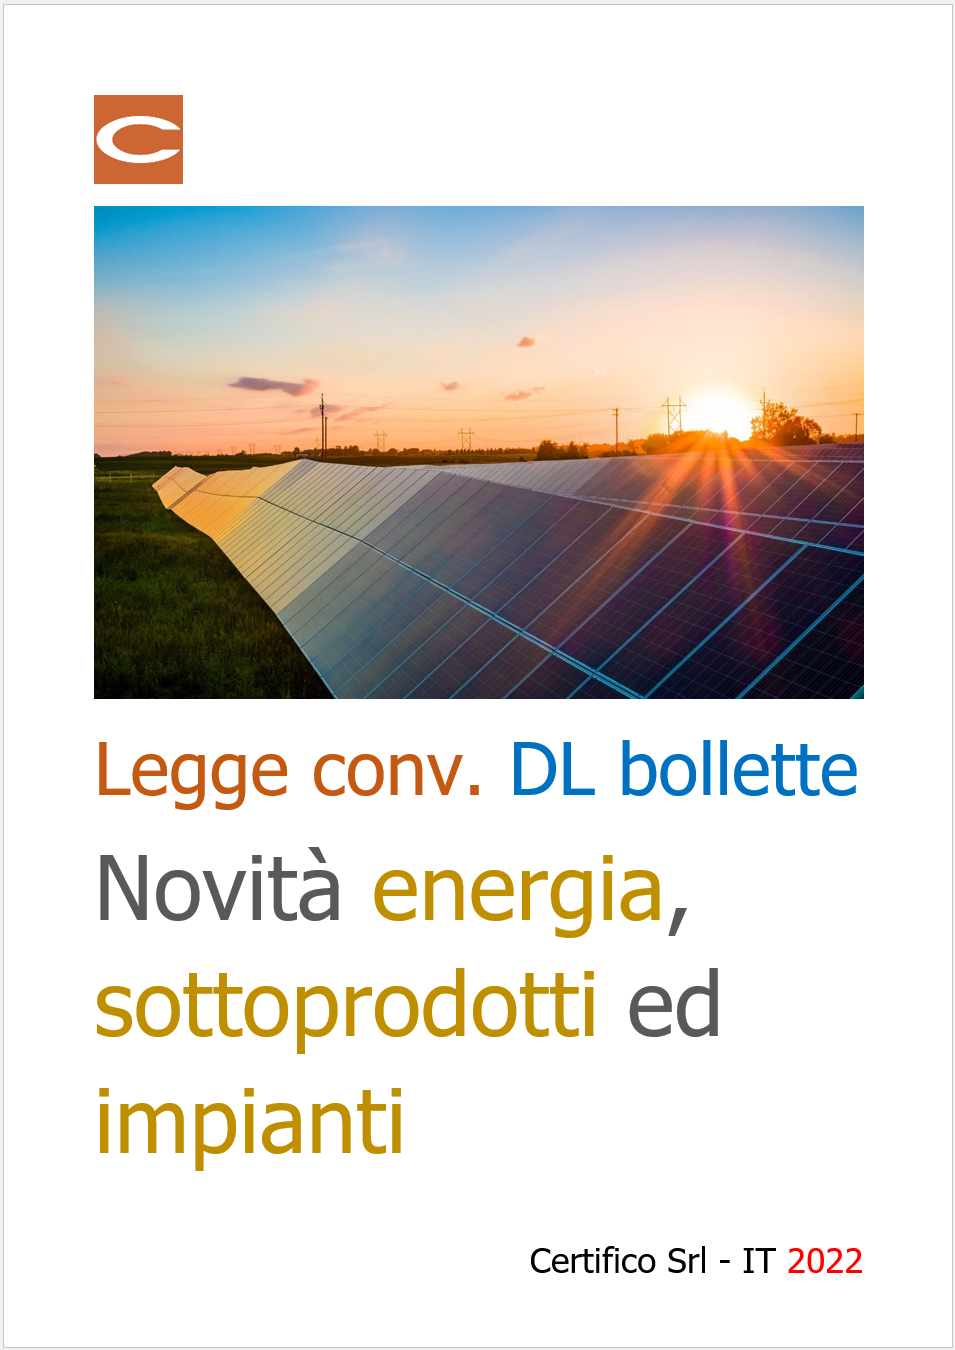 Legge di conv  DL bollette   Novit  energia  sottoprodotti ed impianti